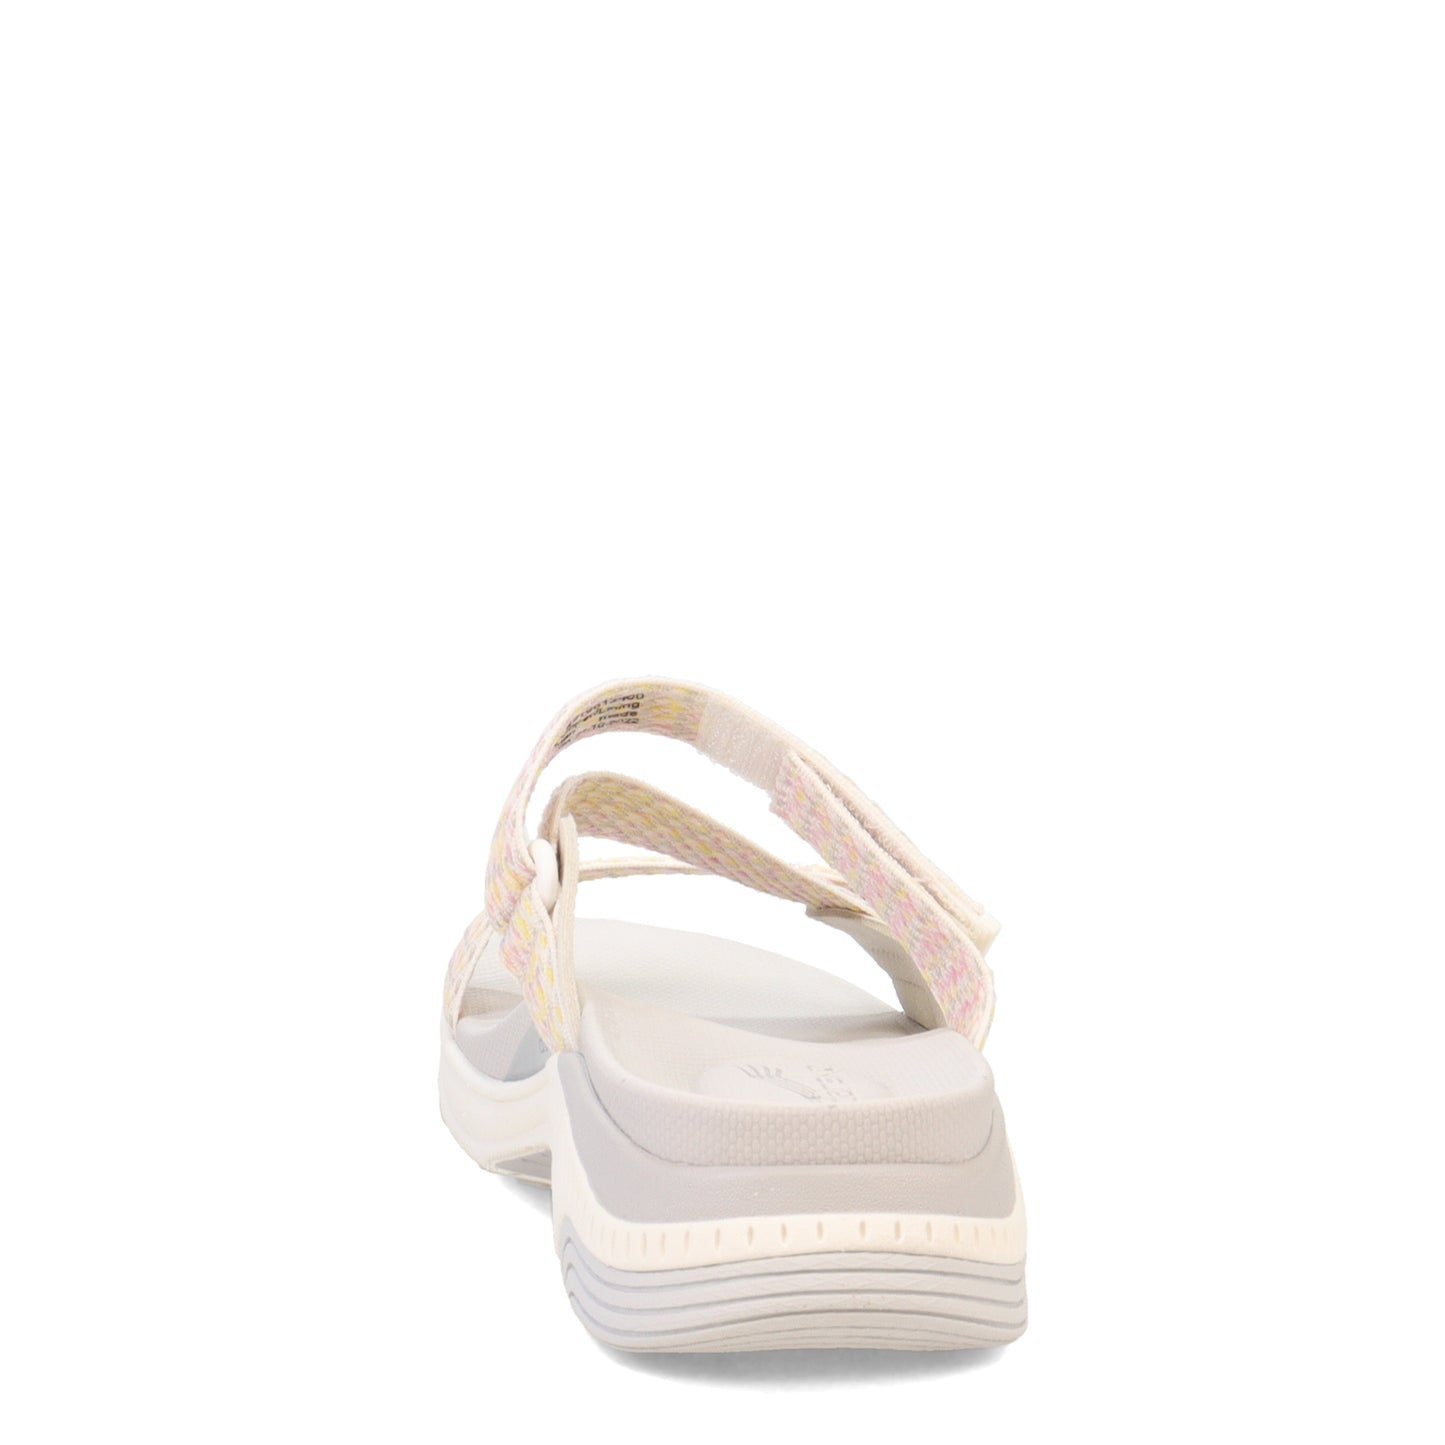 Peltz Shoes  Women's Dansko Rosette Sandal Ivory 4916-612400